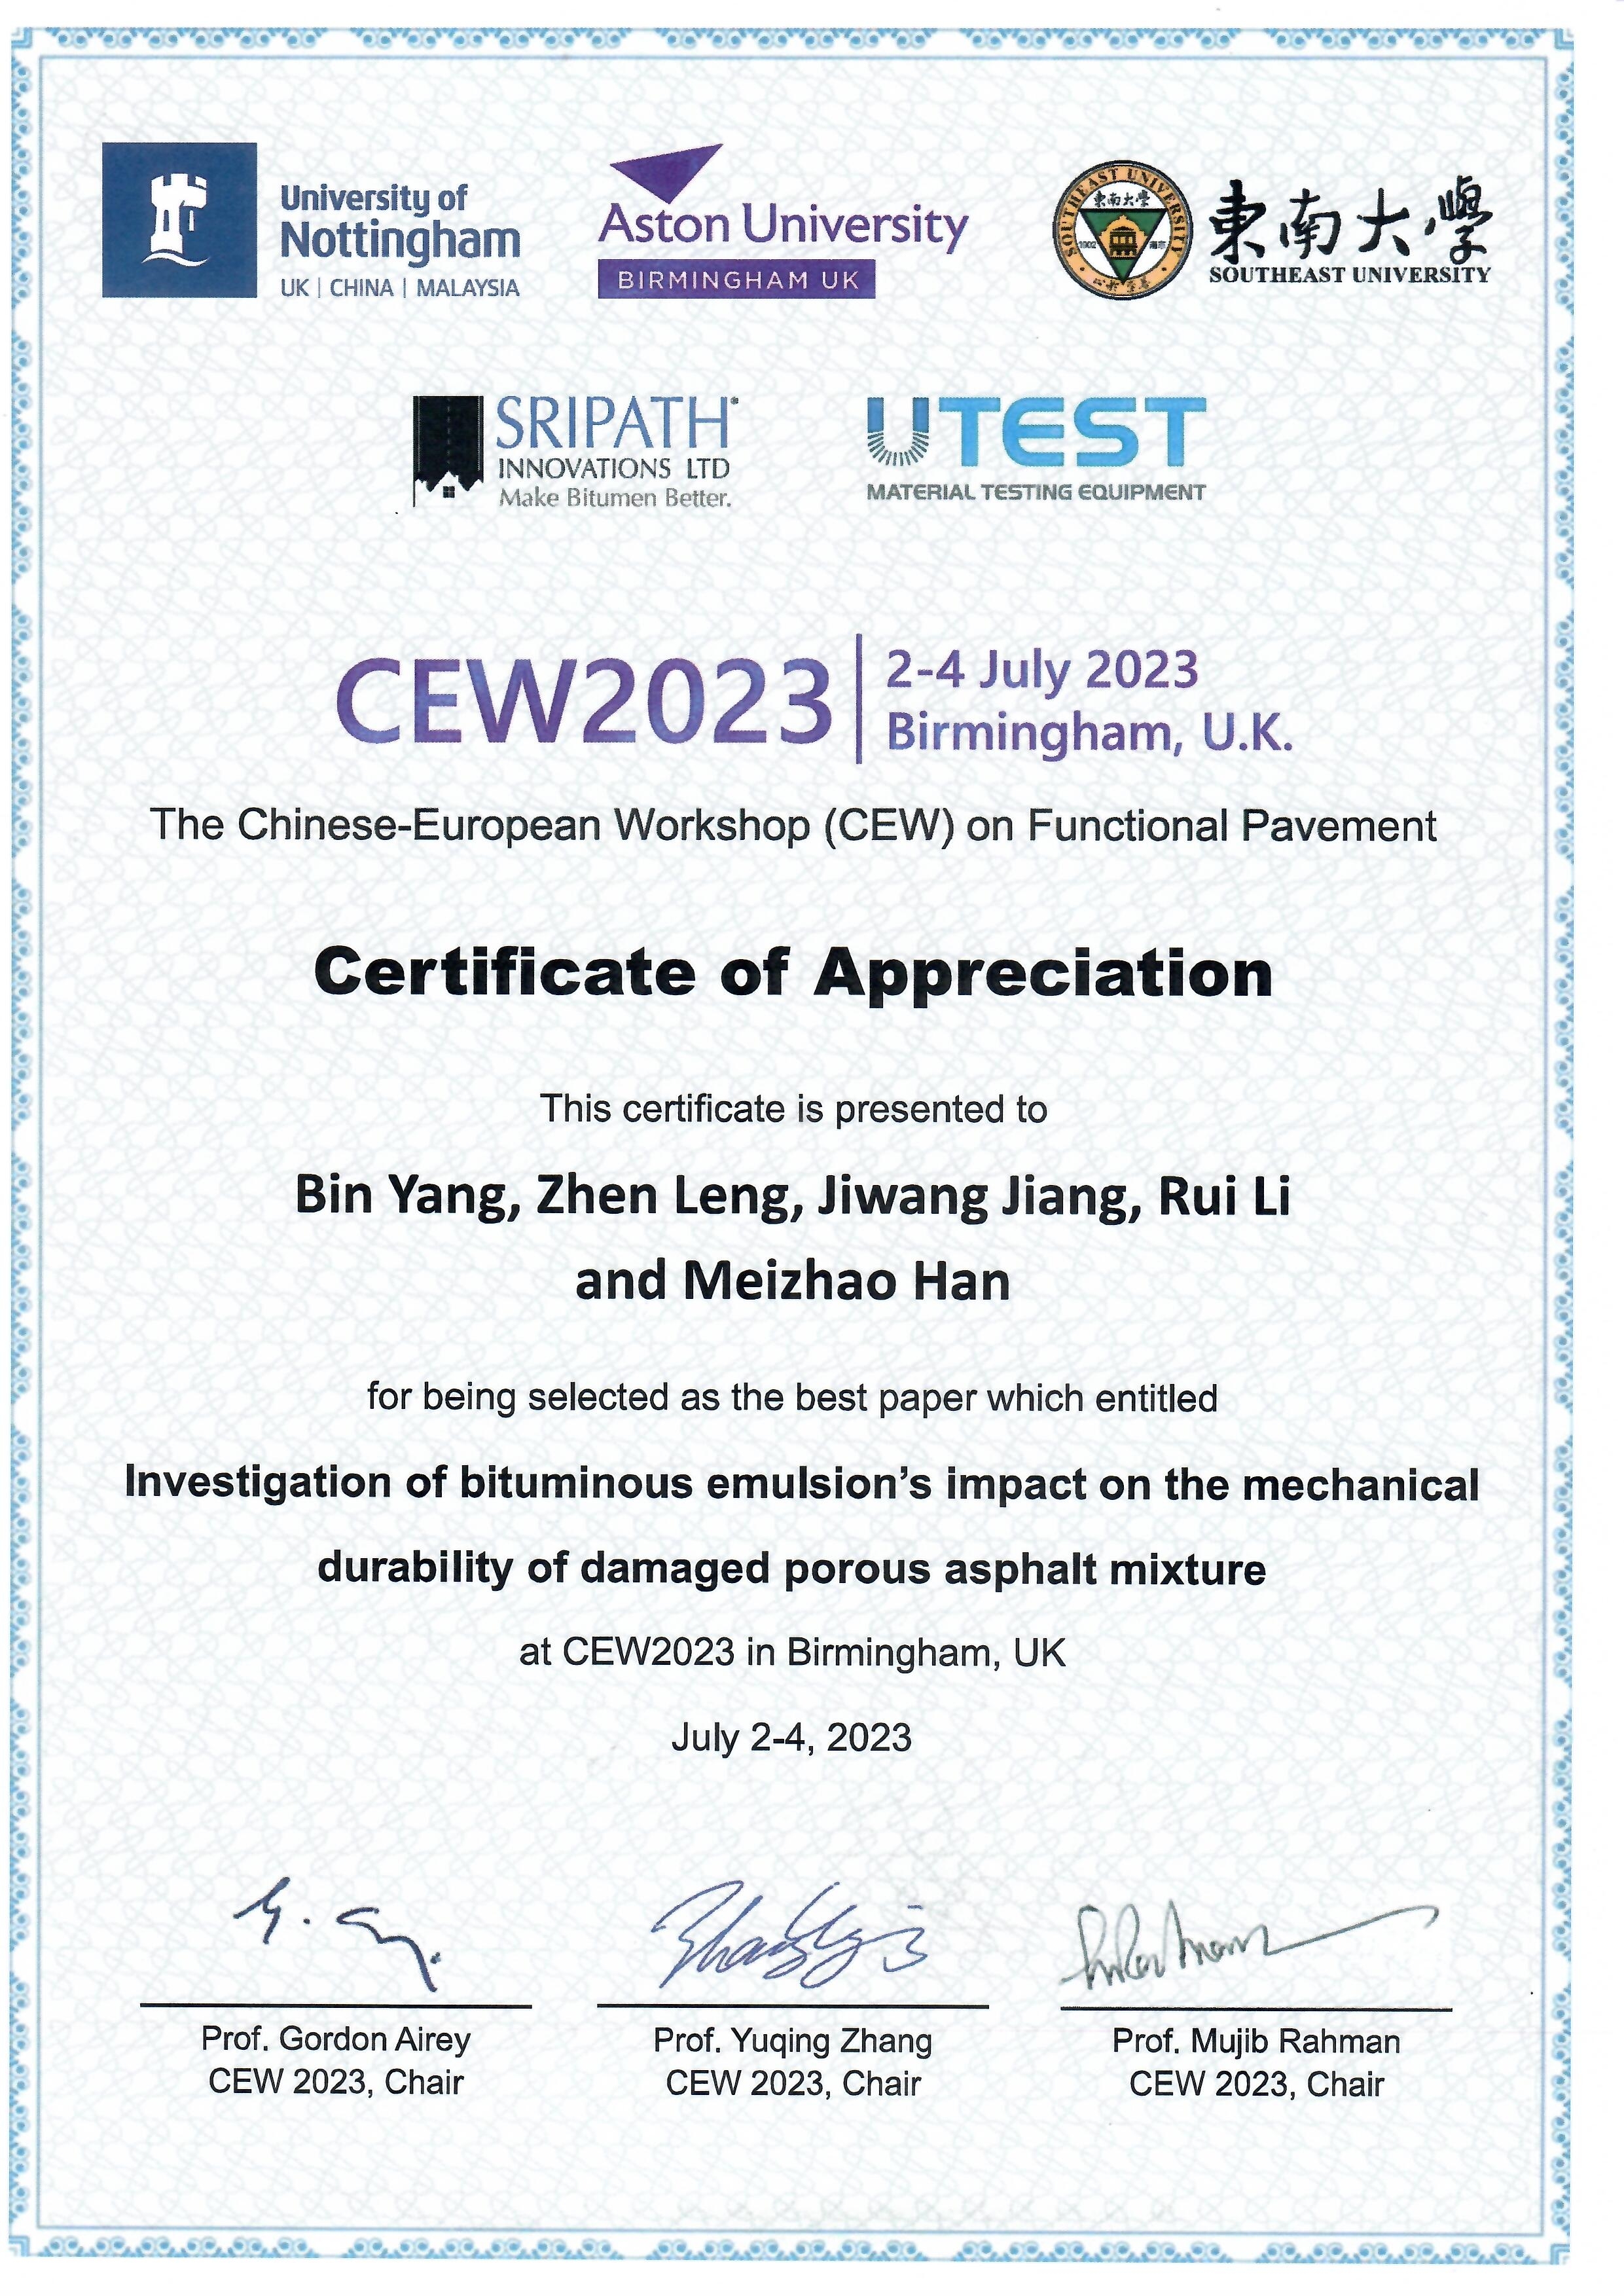 Mr. Bin Yang winning CEW2023 best paper award